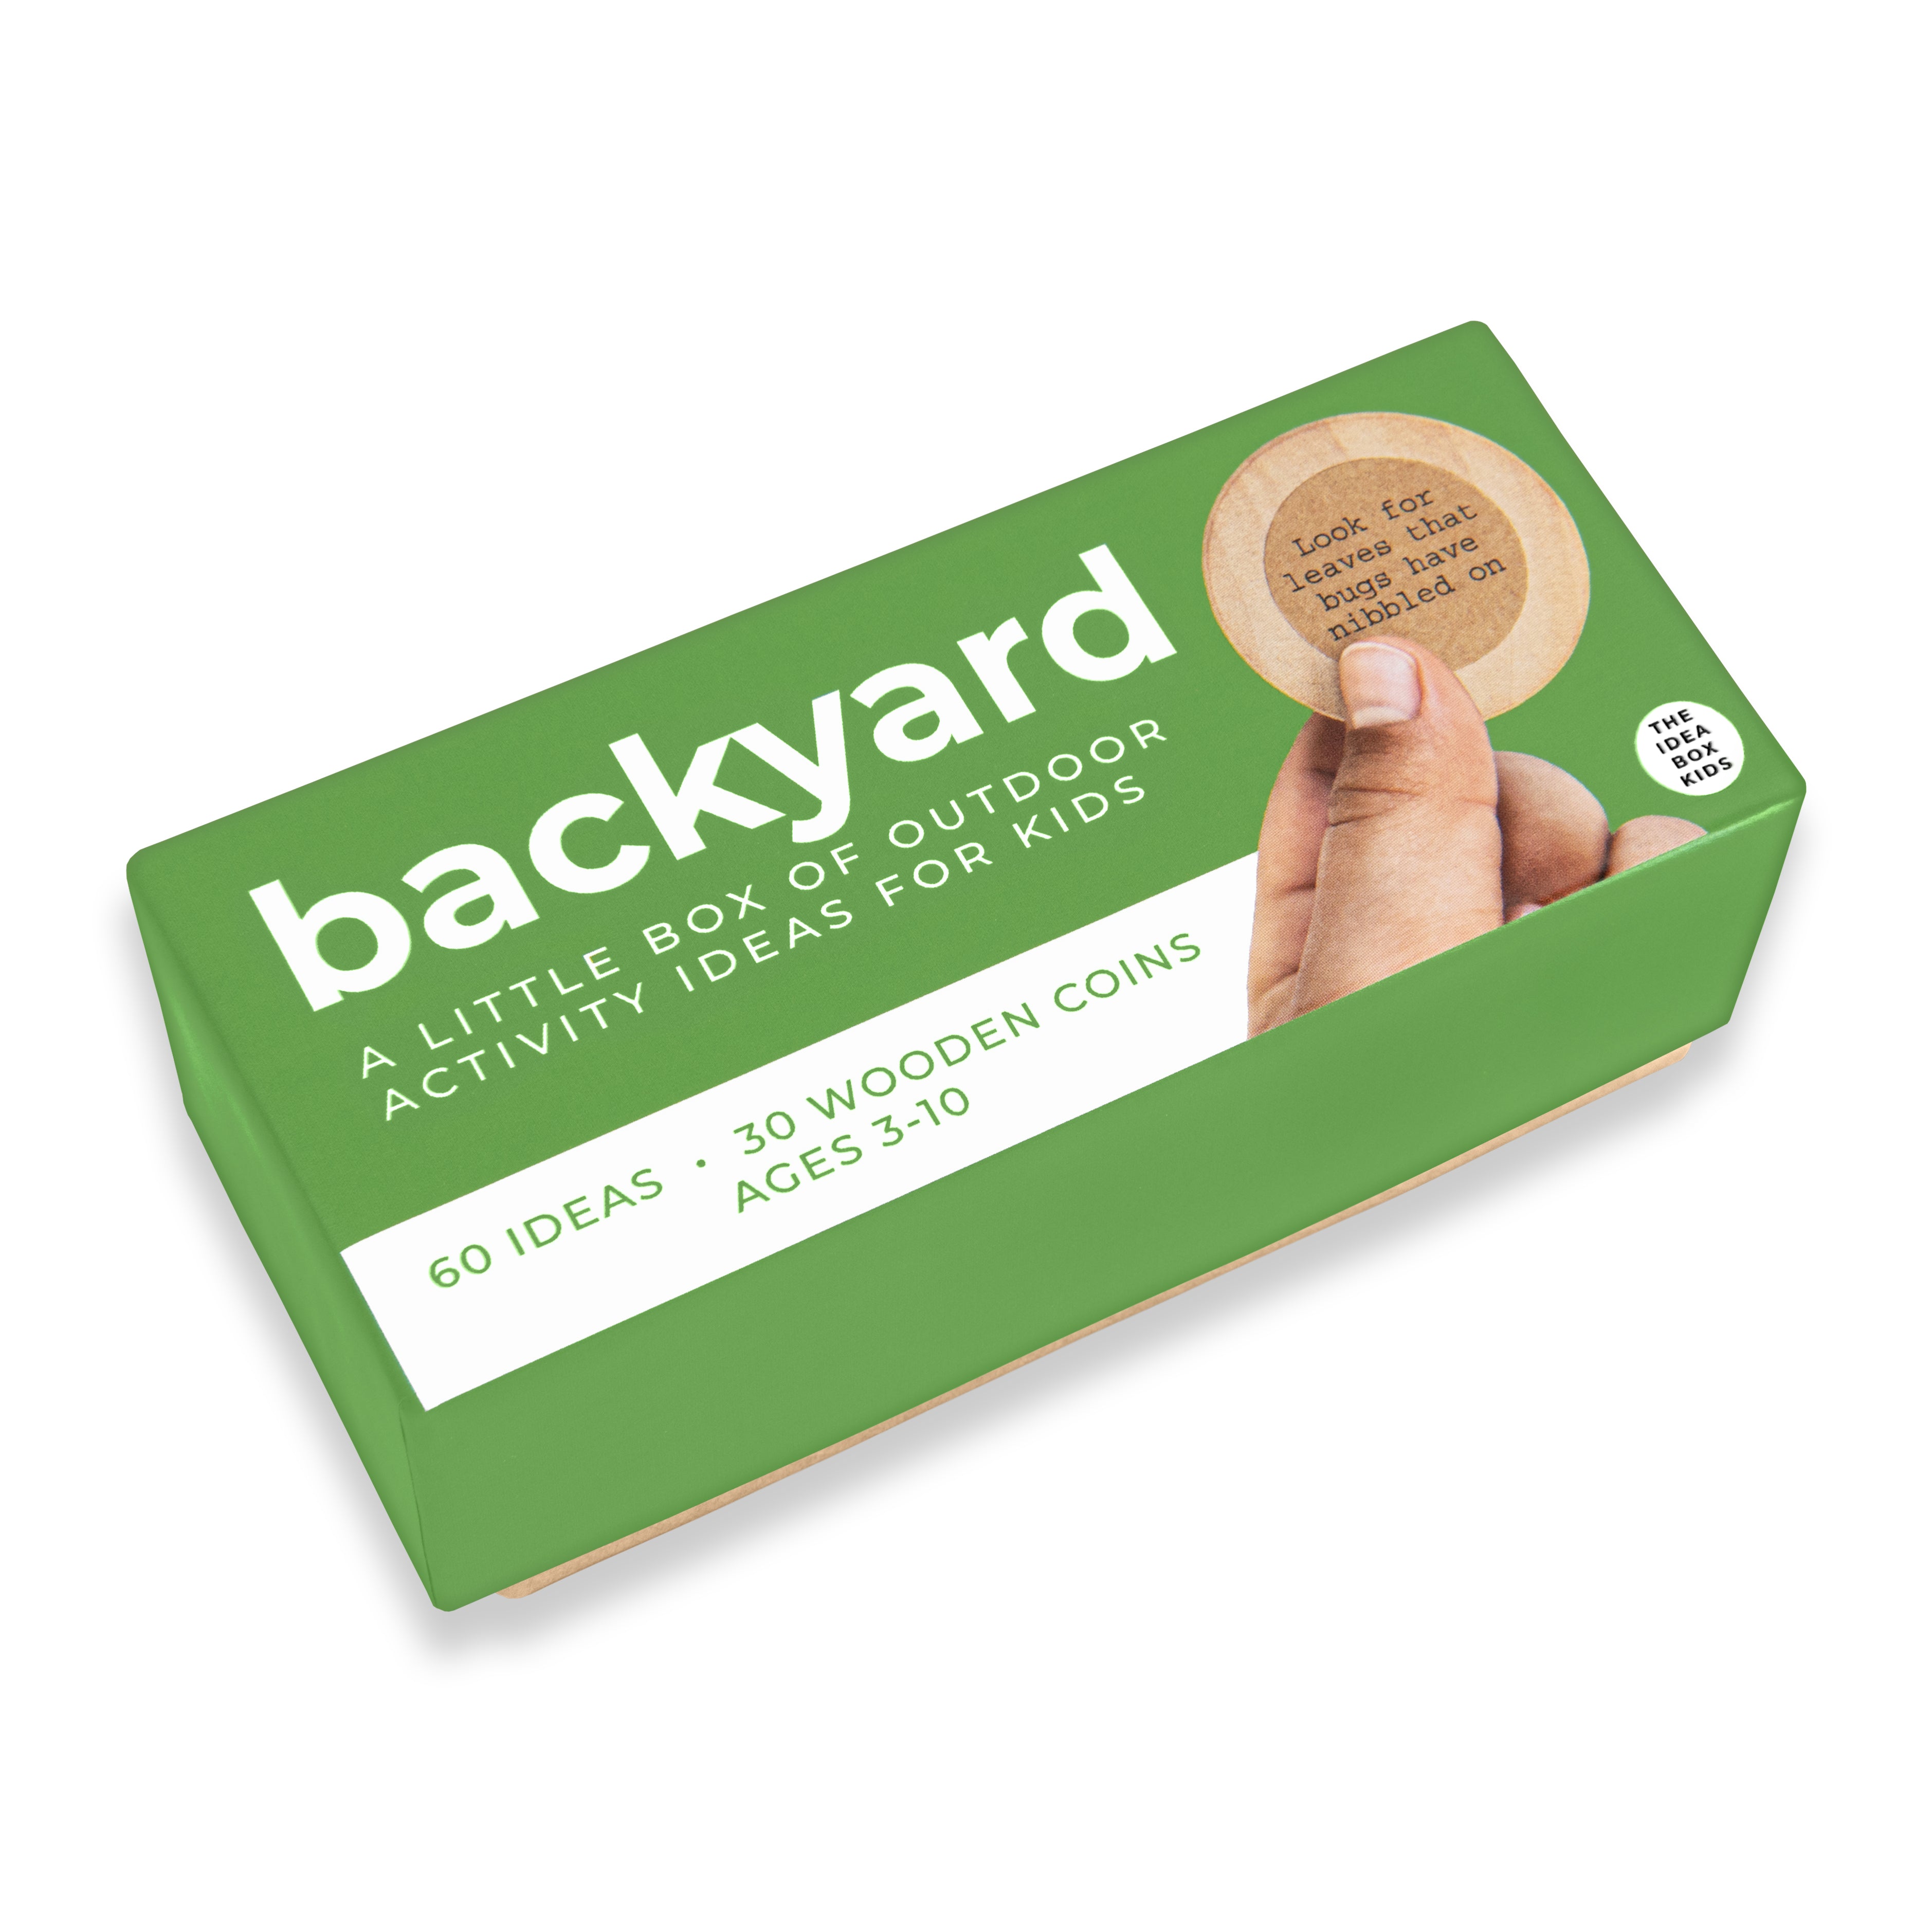 Idea Box Kids: Backyard